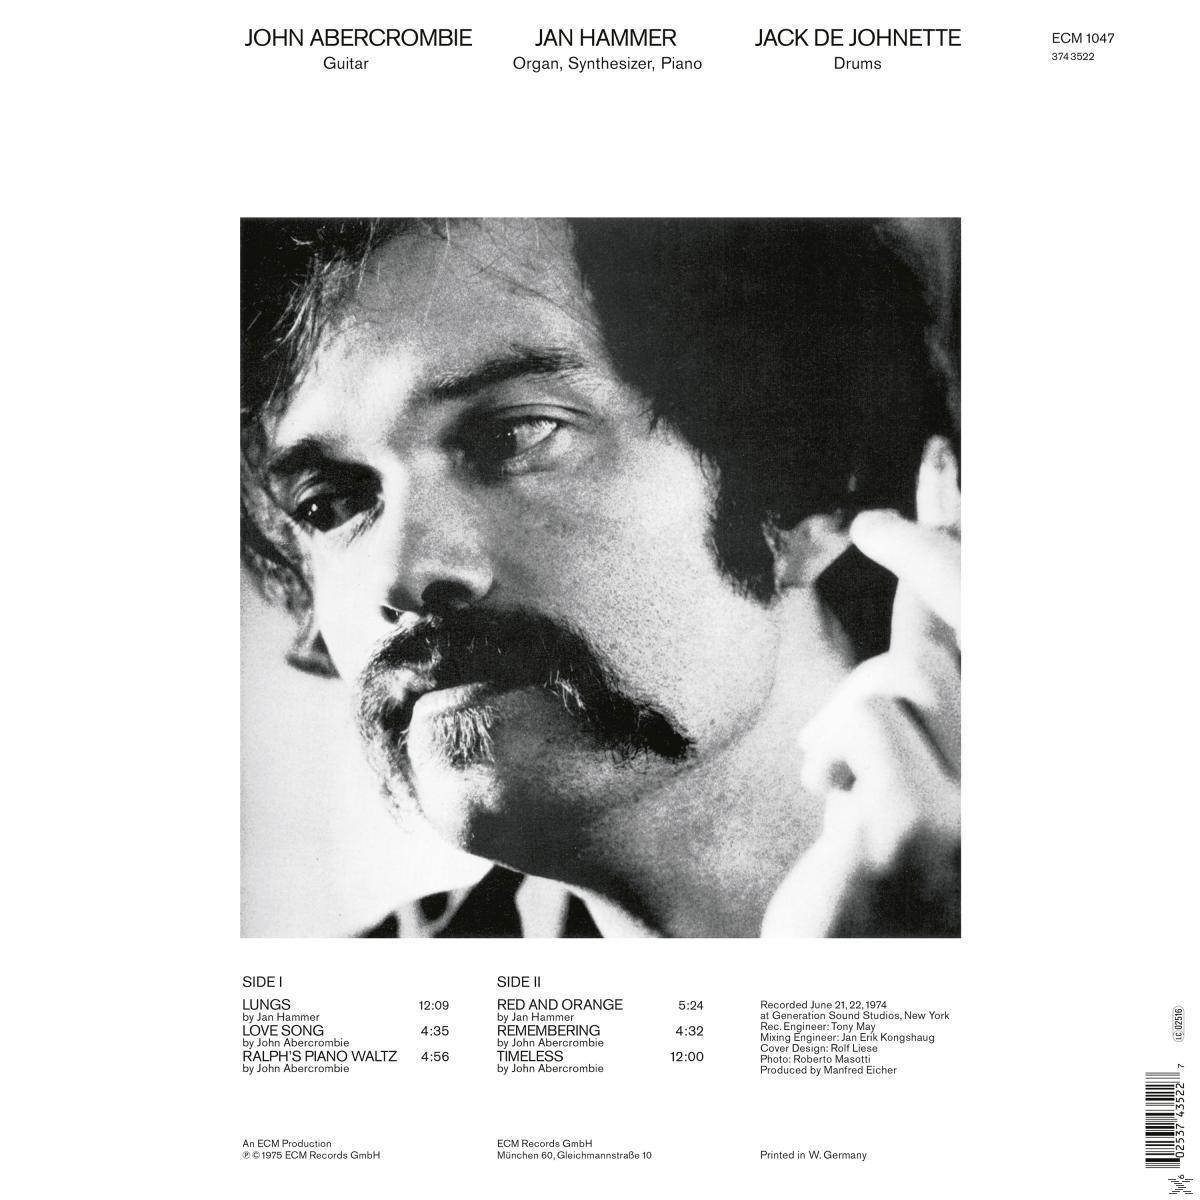 Timeless Abercrombie (Vinyl) John - -